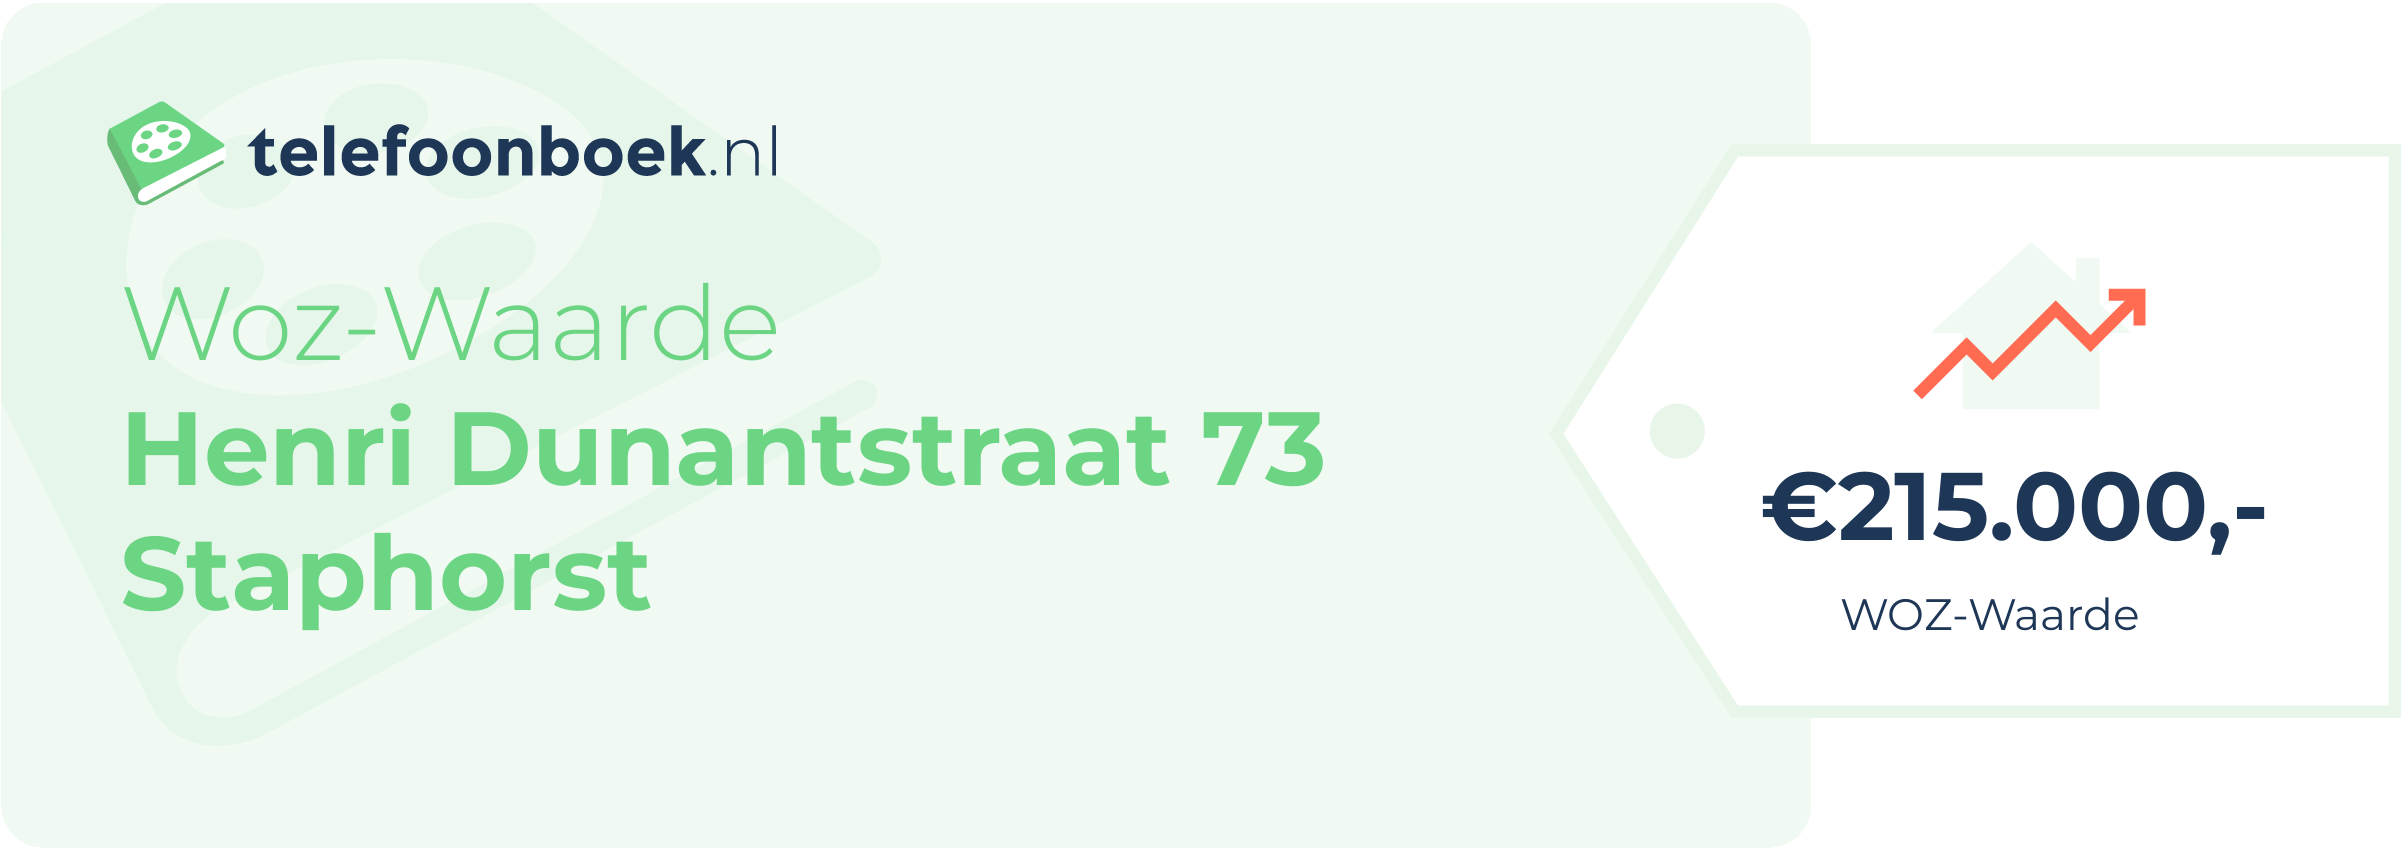 WOZ-waarde Henri Dunantstraat 73 Staphorst